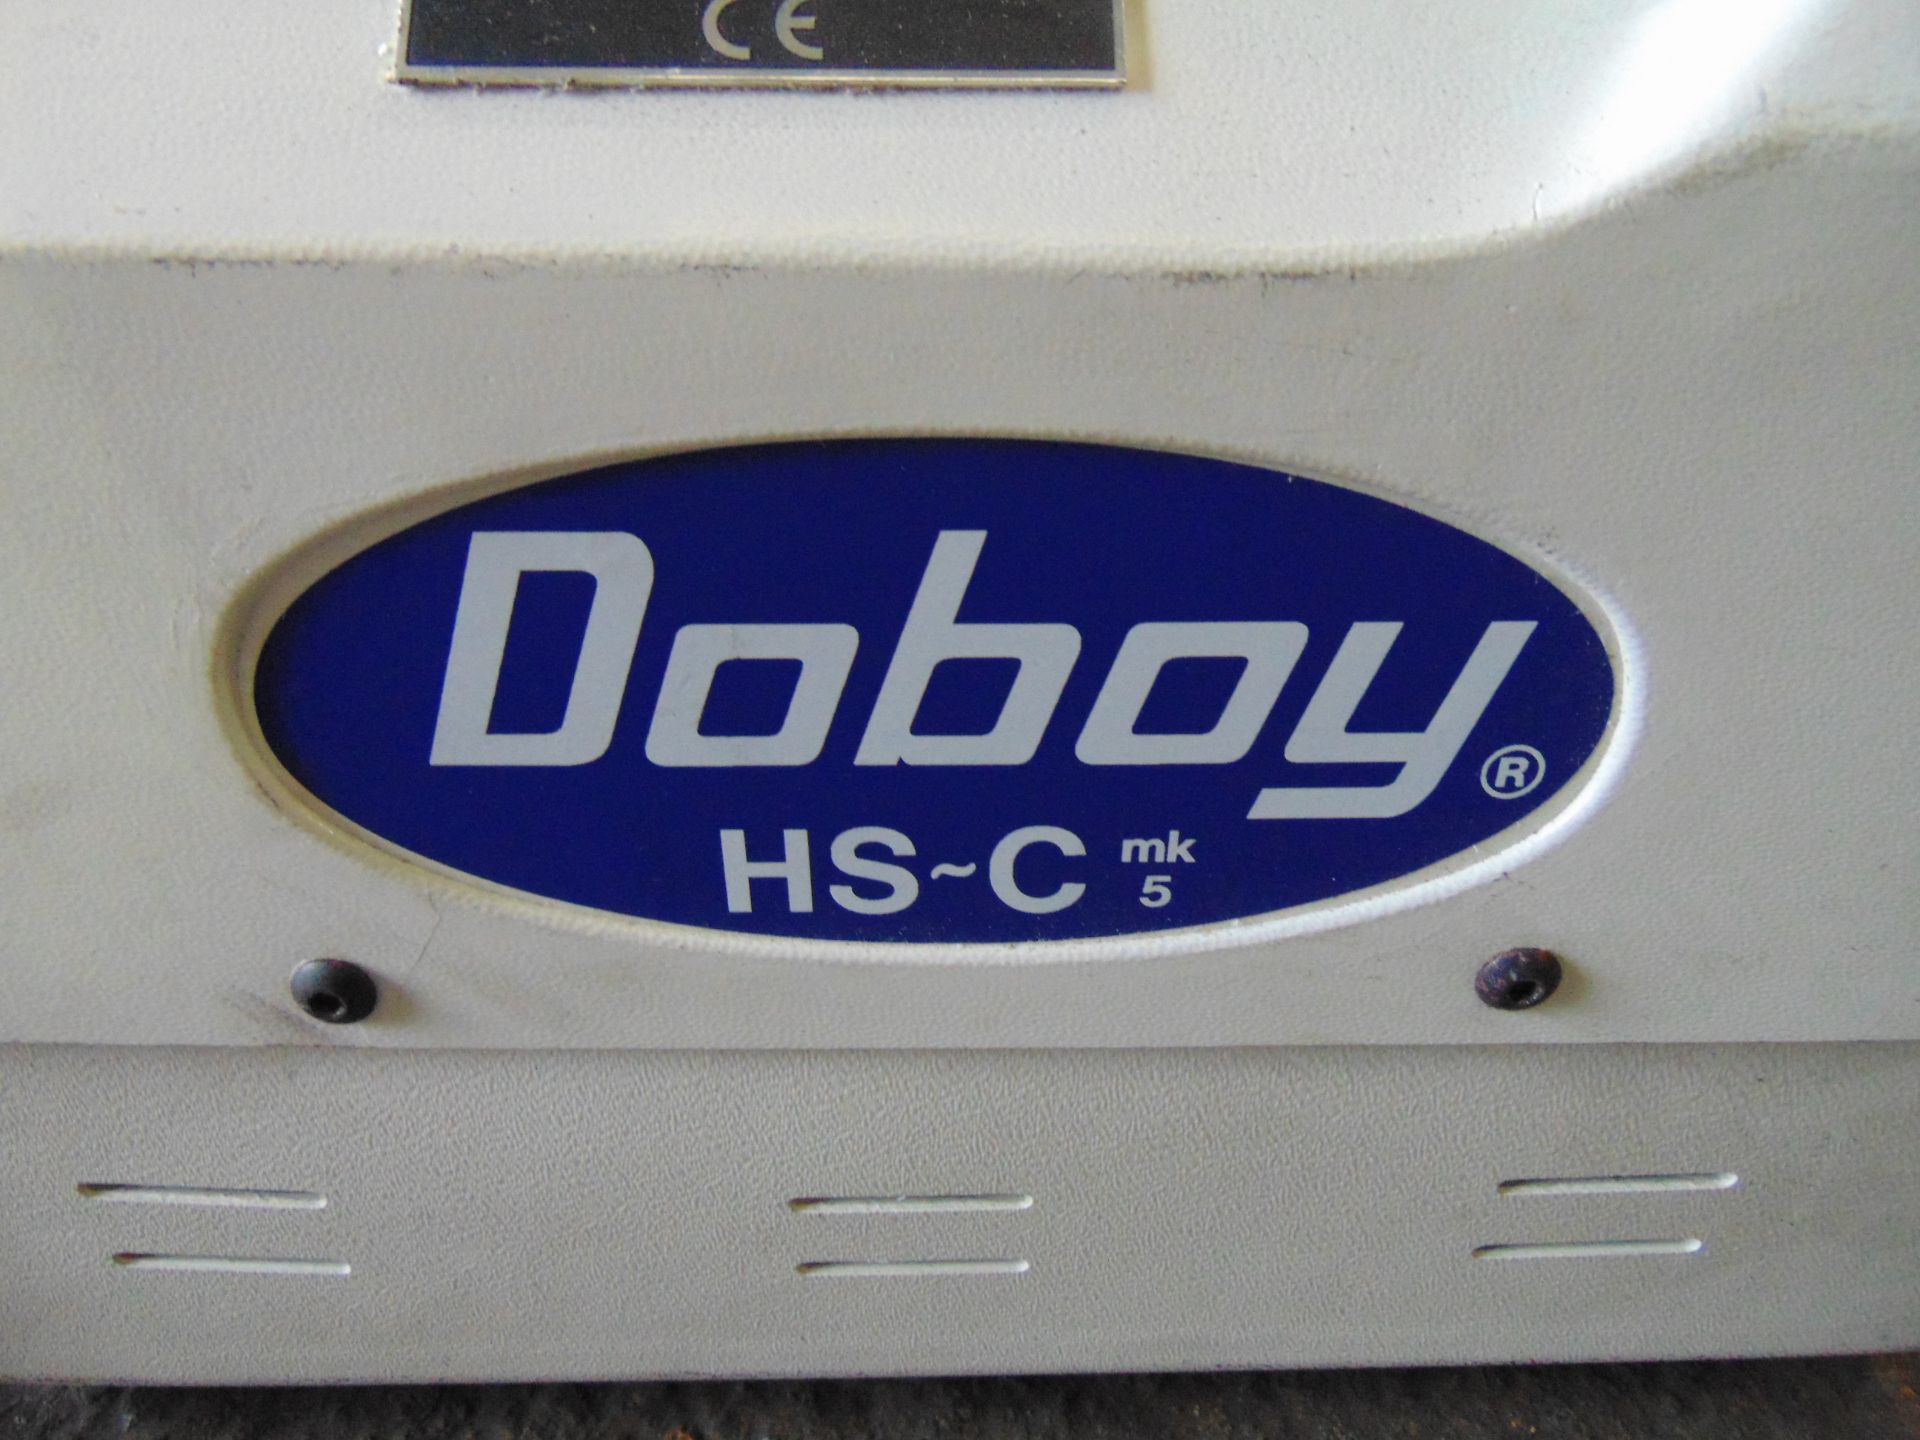 Doboy HS-C mk 5 Heat Sealer - Image 2 of 5